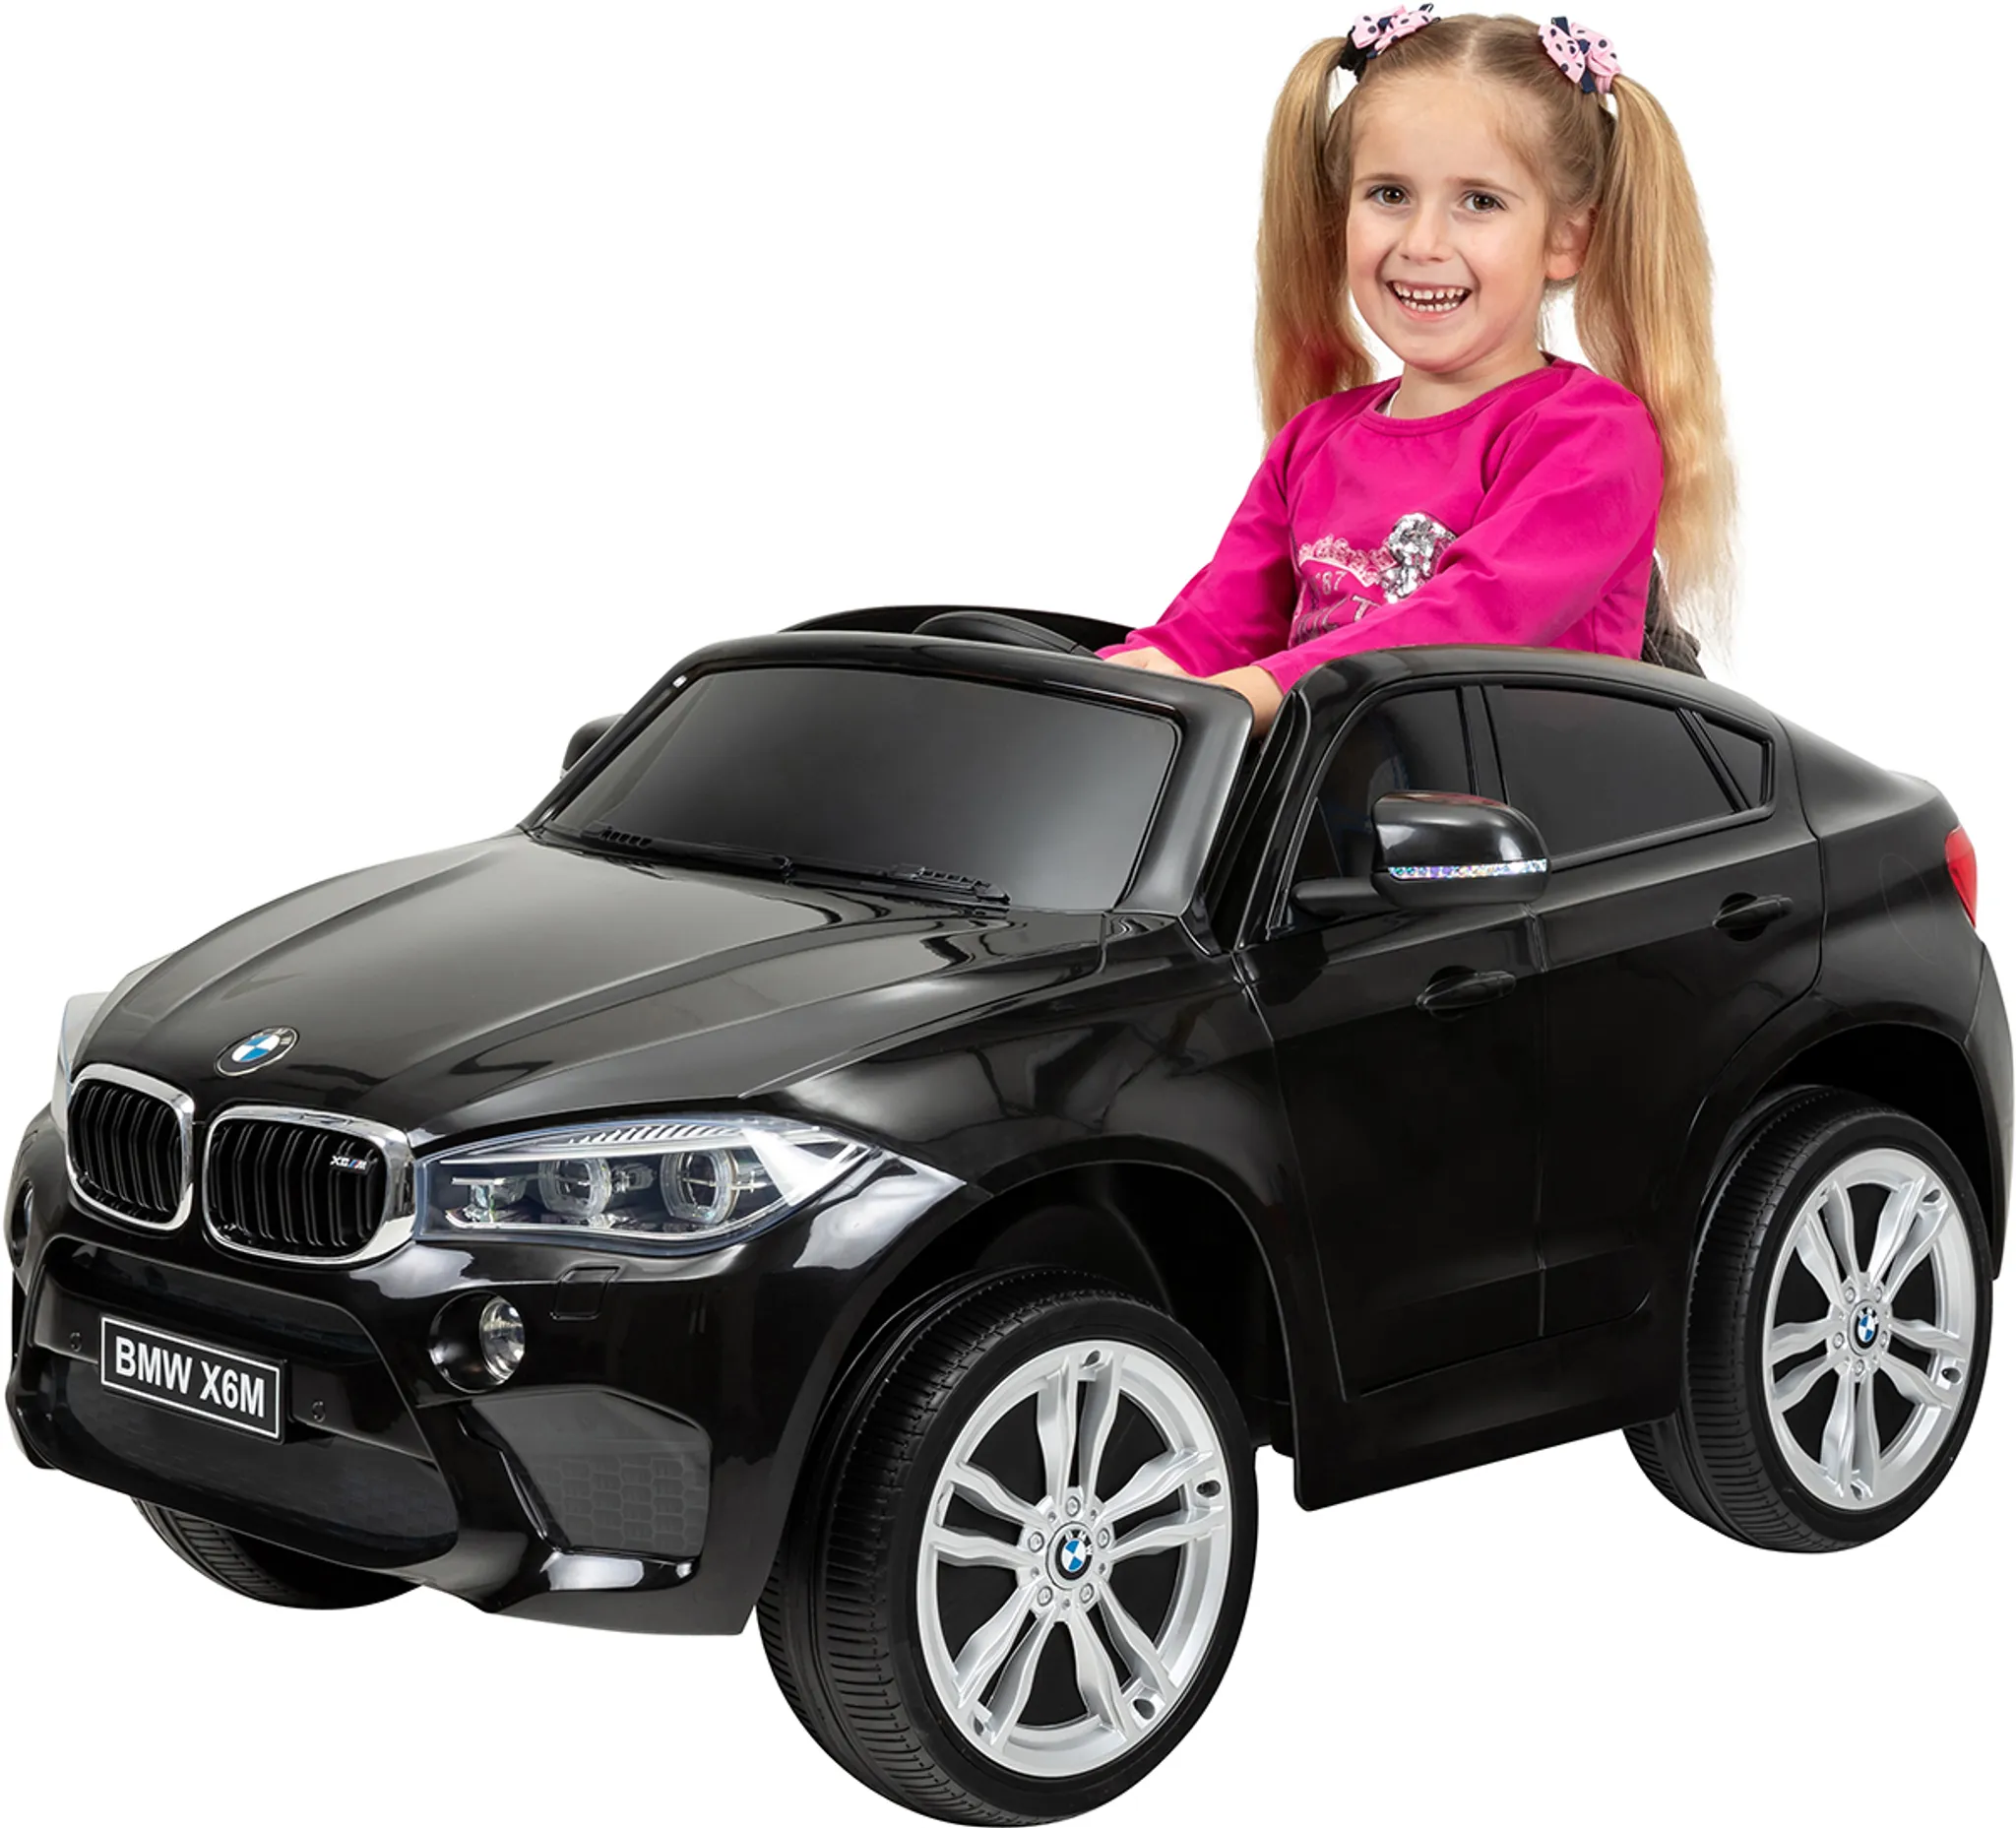 Kinder-Elektroauto BMW X6 M F16, lizenziert